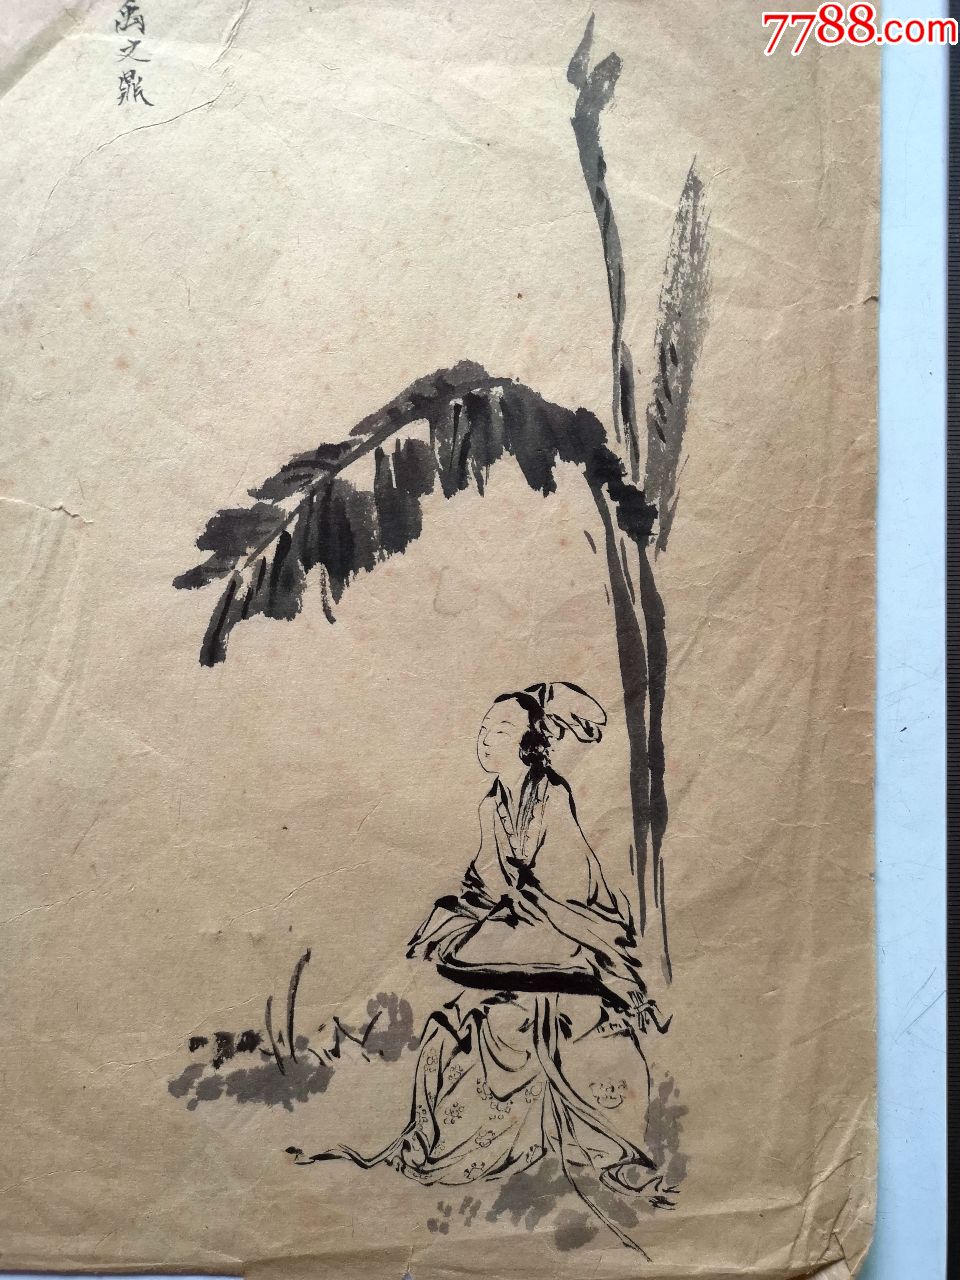 80年代毛笔线描人物画稿原稿《仕女图》(仿禹之鼎)